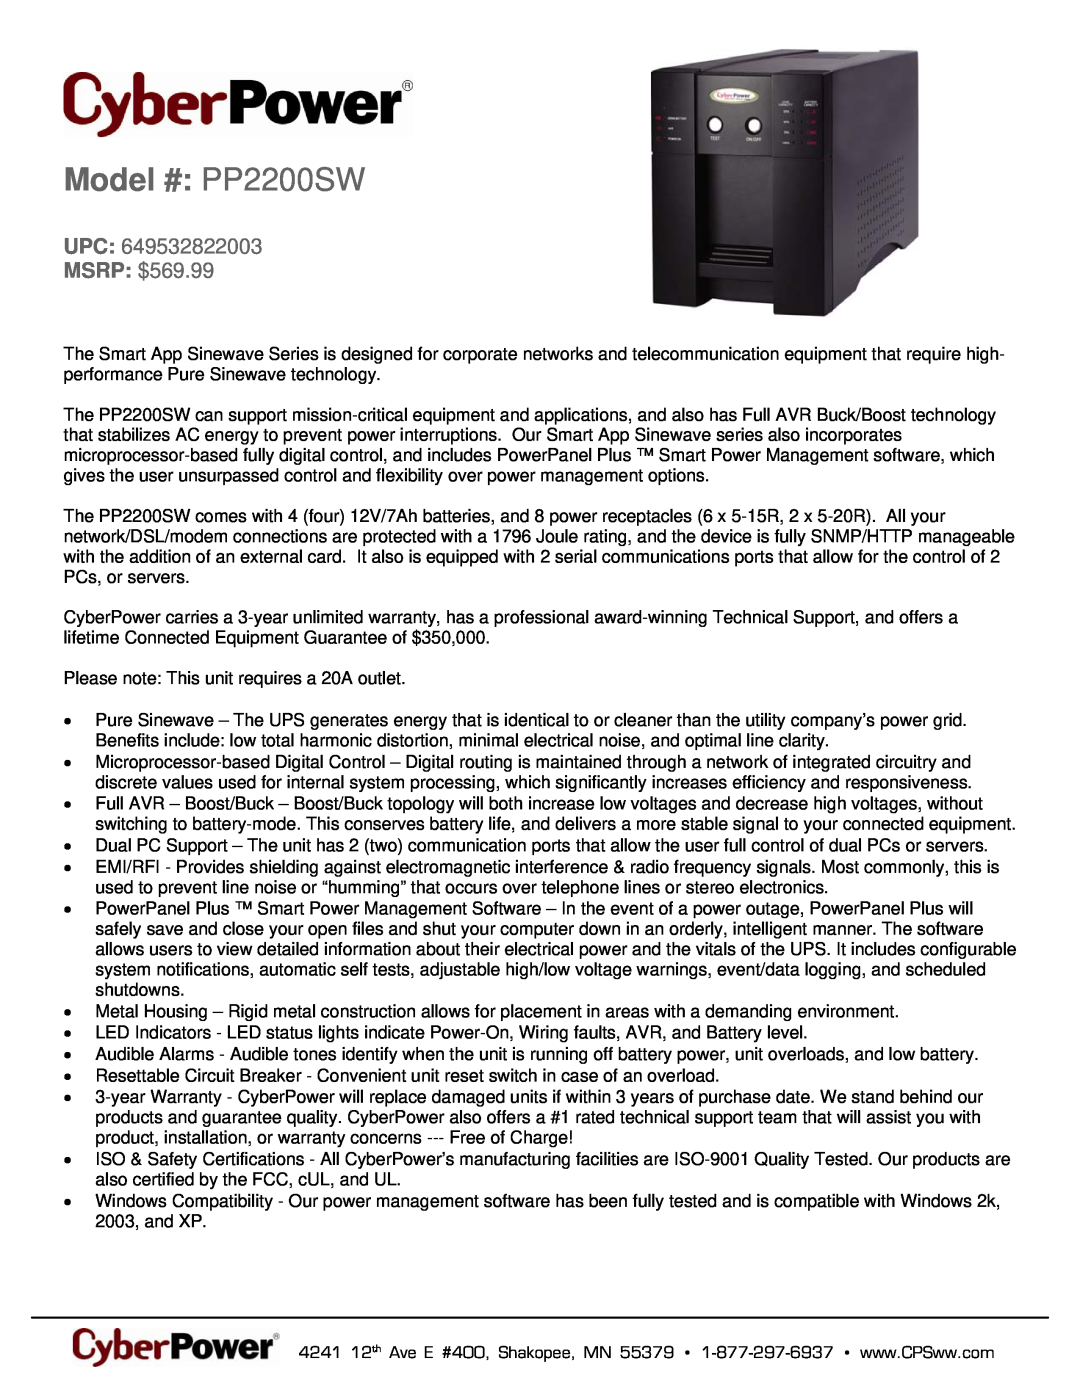 CyberPower Systems 649532822003 warranty Model # PP2200SW, UPC MSRP $569.99 